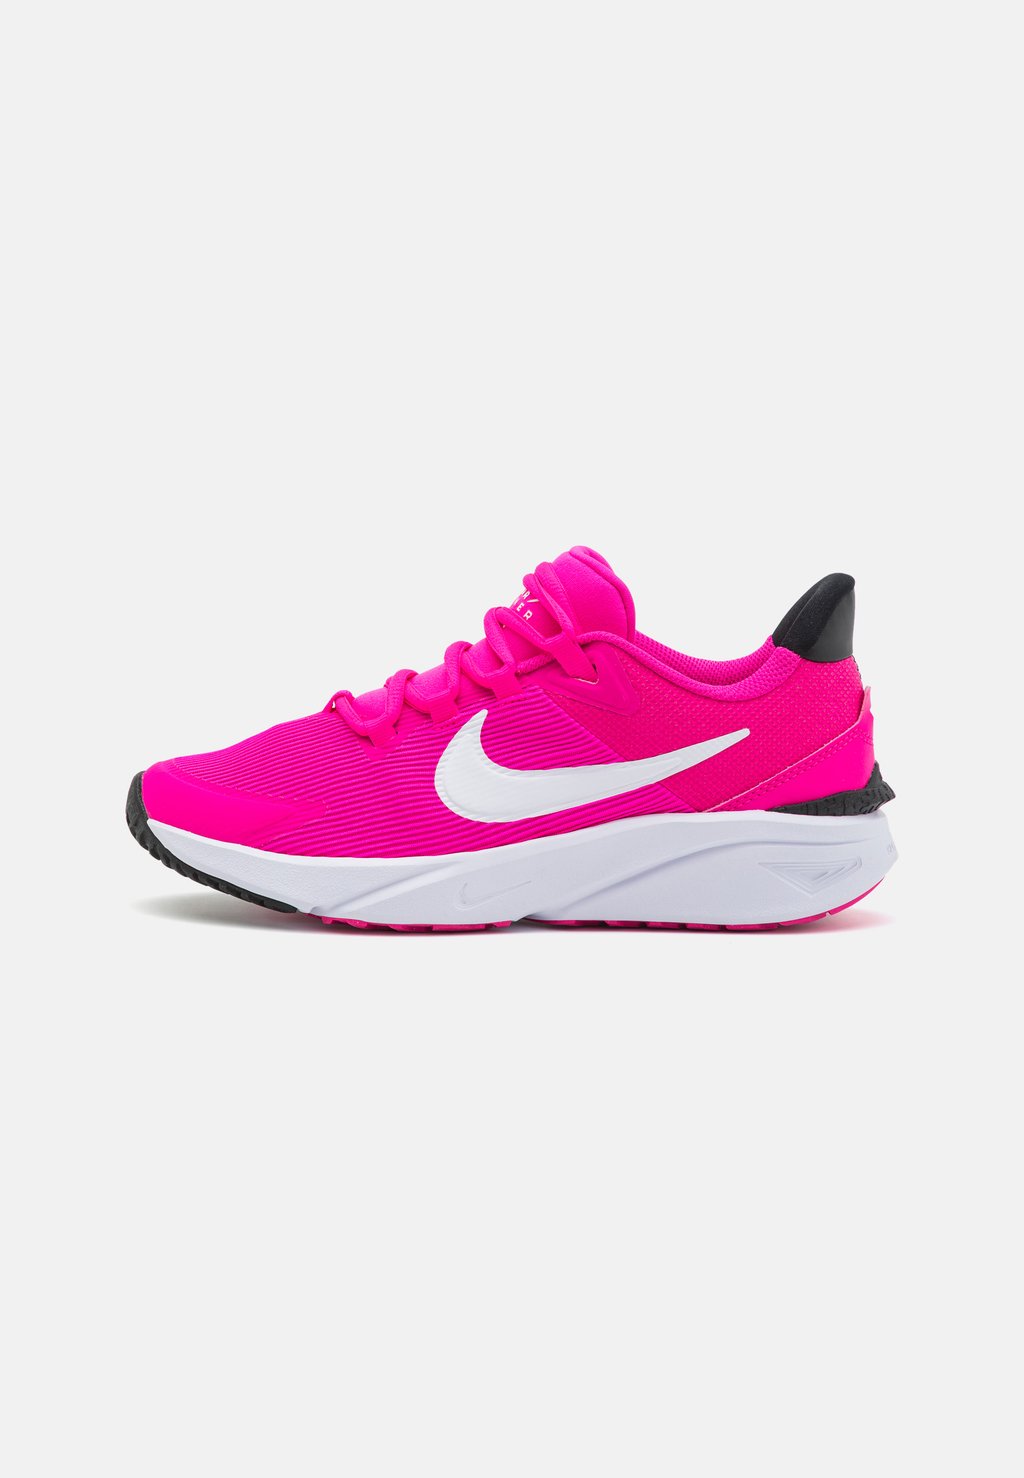 Нейтральные кроссовки Star Runner 4 Unisex Nike, цвет fierce pink/white/black/playful pink